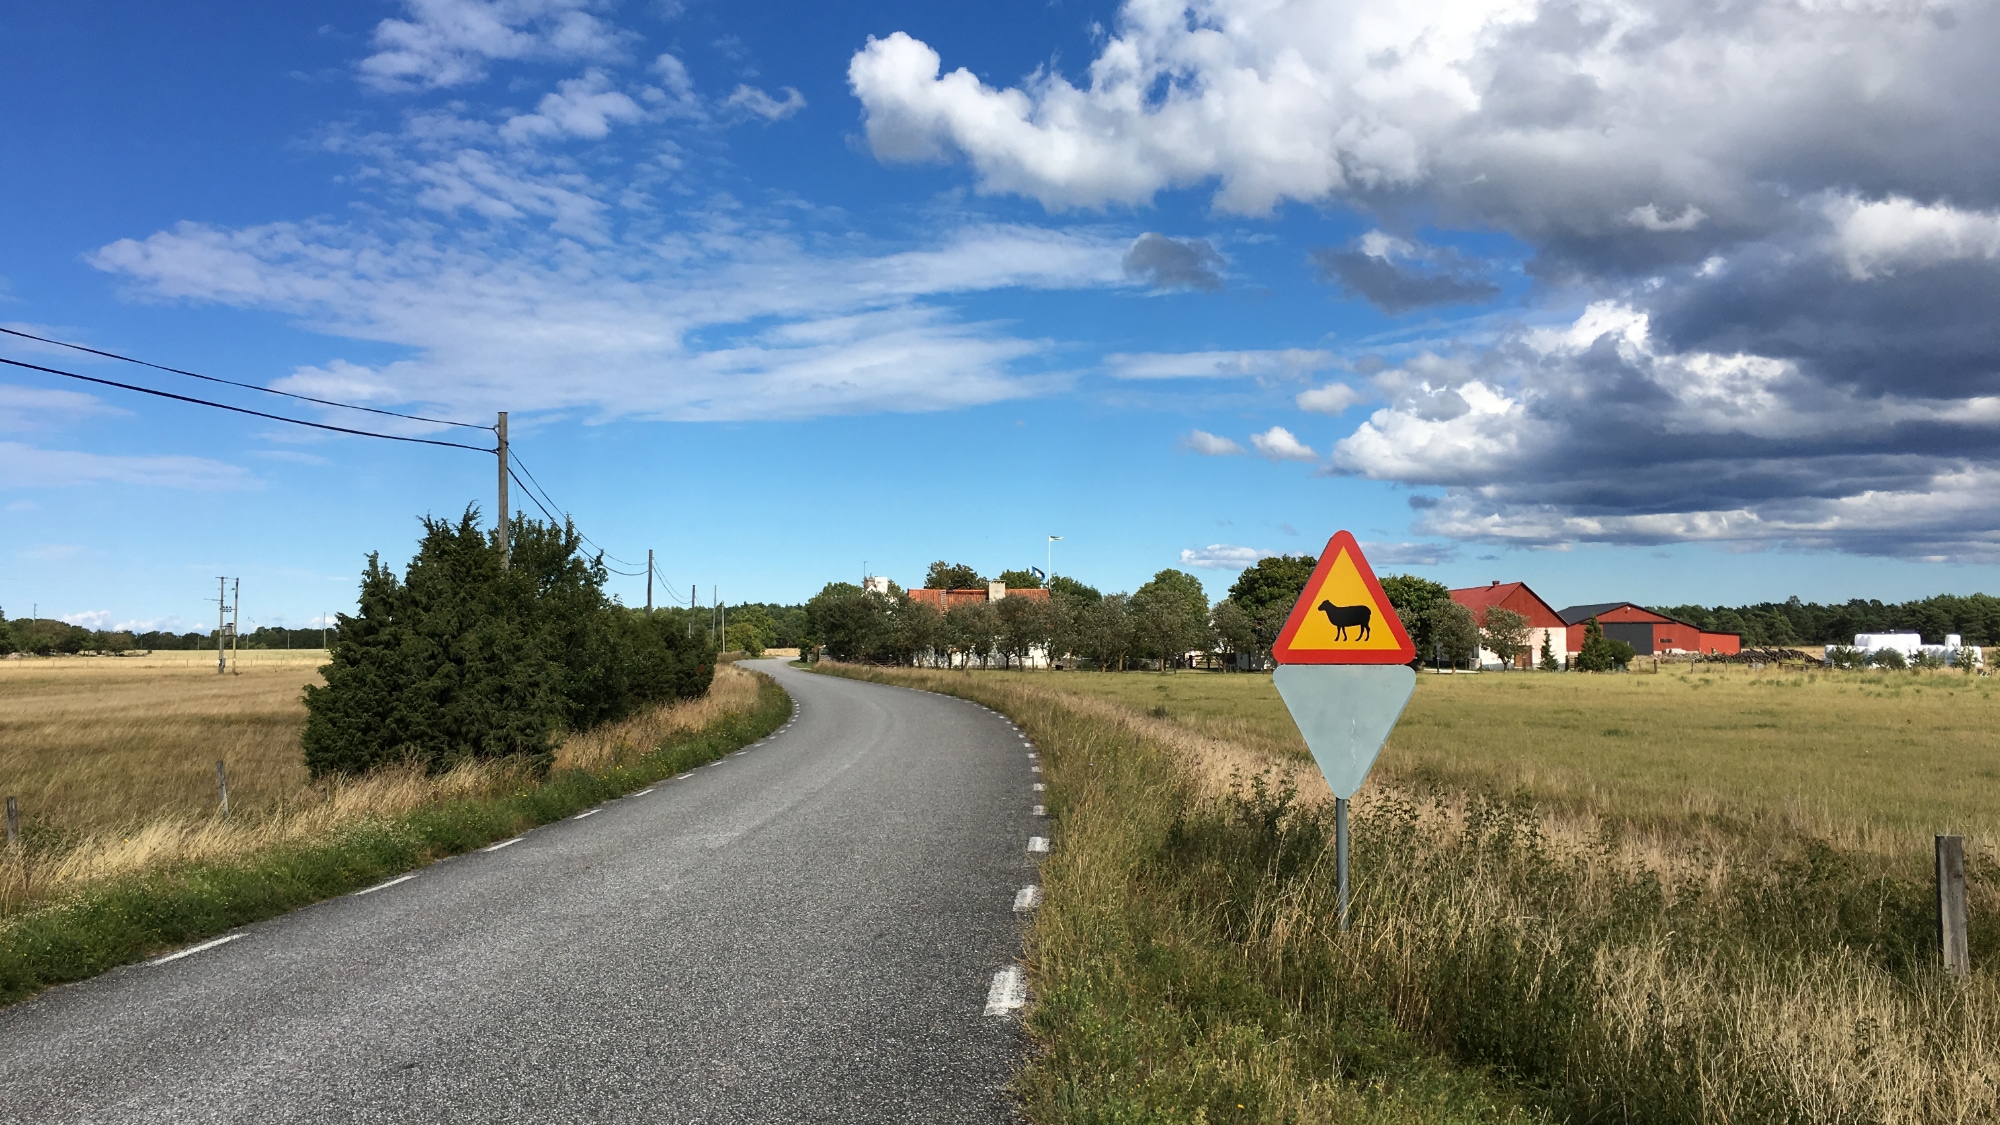 A photo taken at Fleringe on Gotland.